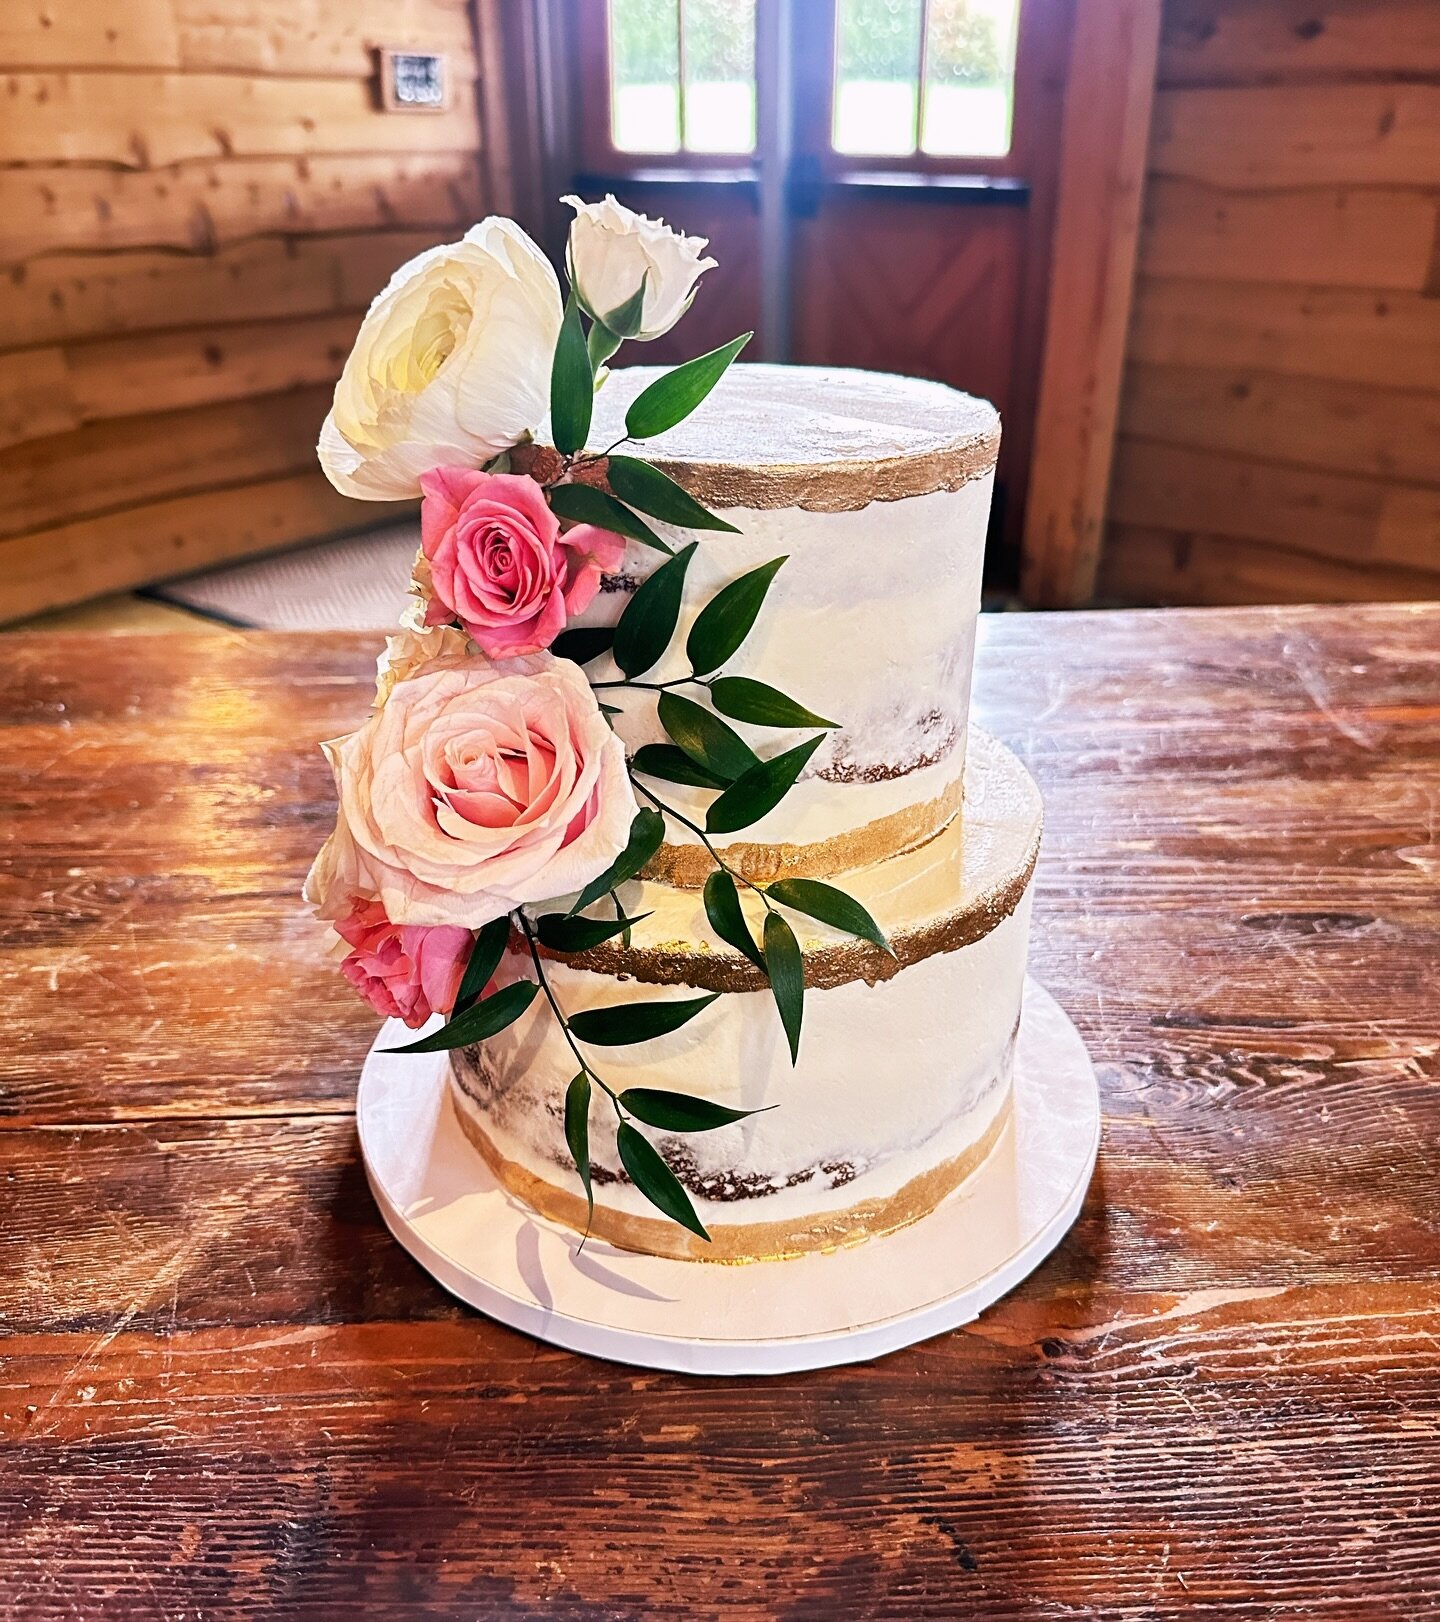 The sweetest two tier wedding cake 🤍 🍰
&bull;
&bull;
&bull;
&bull;
&bull;
#goldflakes #freshflorals #wedding #weddingvenue #weddingcake #weddingseason #cake #cakedecorating #cakeoftheday #cakestyle #nashville #franklintn #cakecakecake